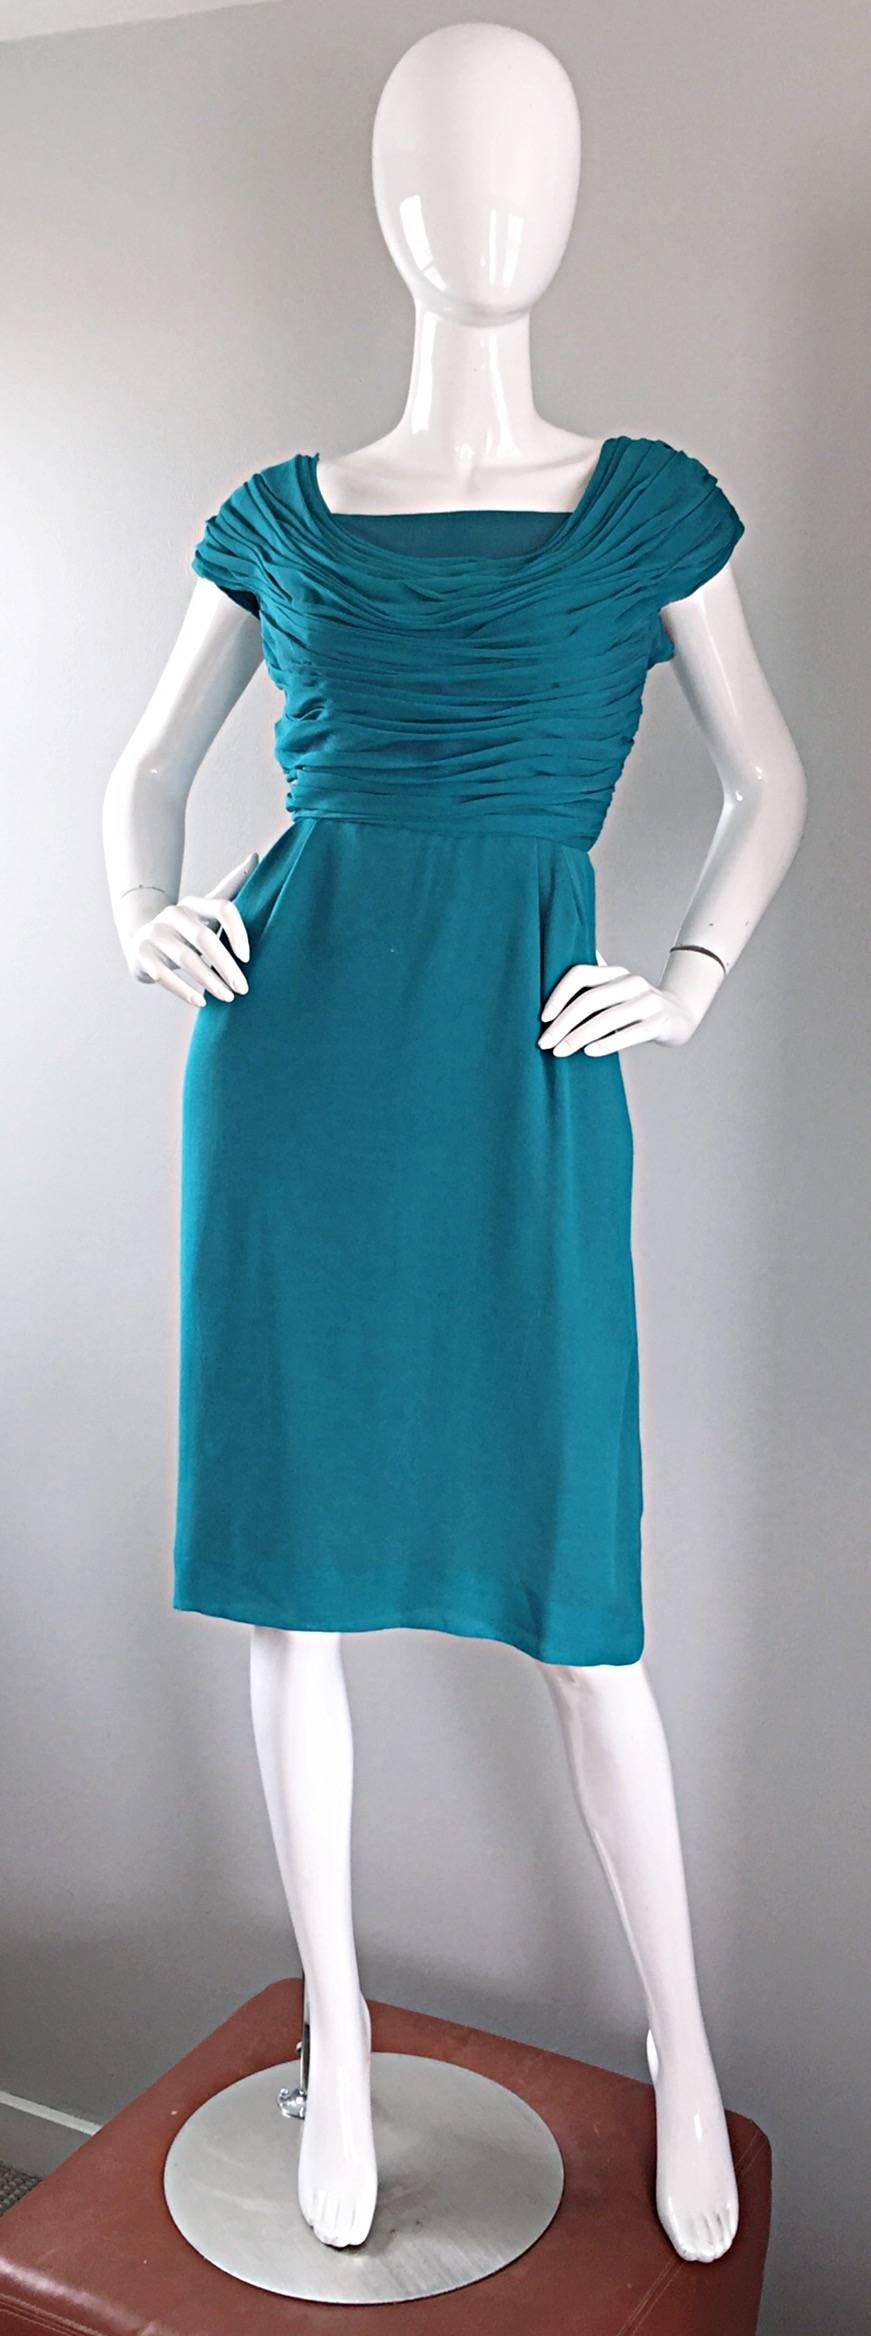 Wunderschönes 1950er Jahre ELLIETTE LEWIS teal blue silk chiffon dress! Das plissierte, gerüschte Mieder wirkt wie ein griechisches Kleid und hat Kappenärmel. Schmeichelnder gerader Rock. Mehrere Lagen aus weichem Seidenchiffon. Durchgehender